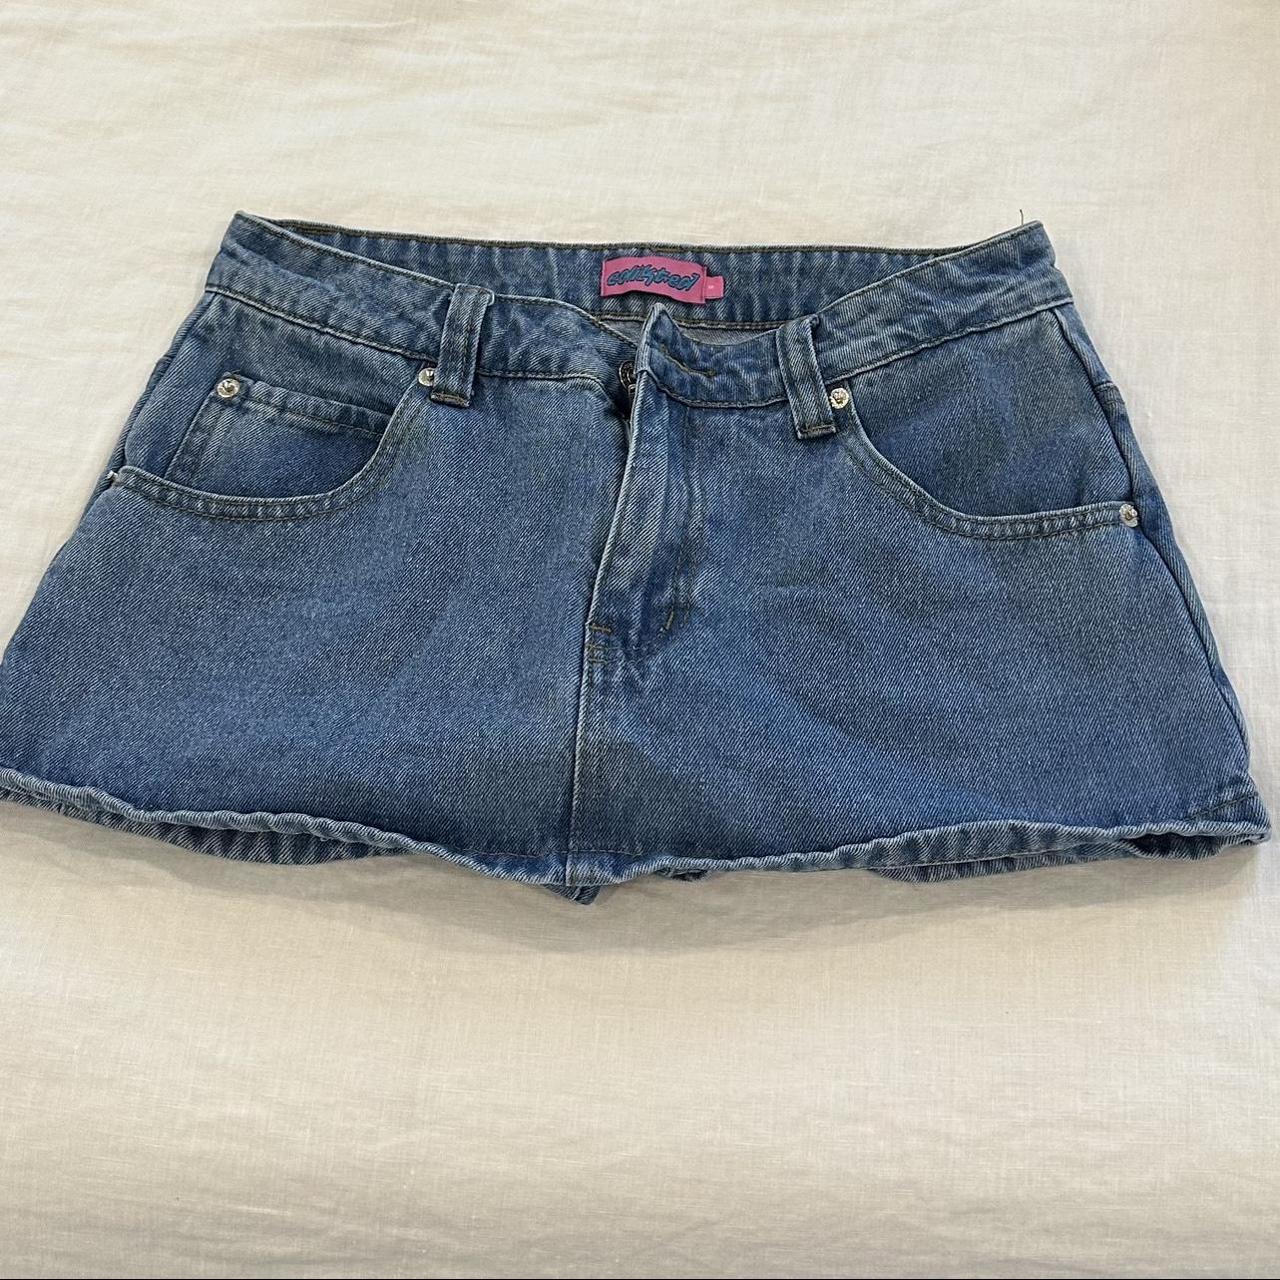 edikted jean skirt/short - Depop